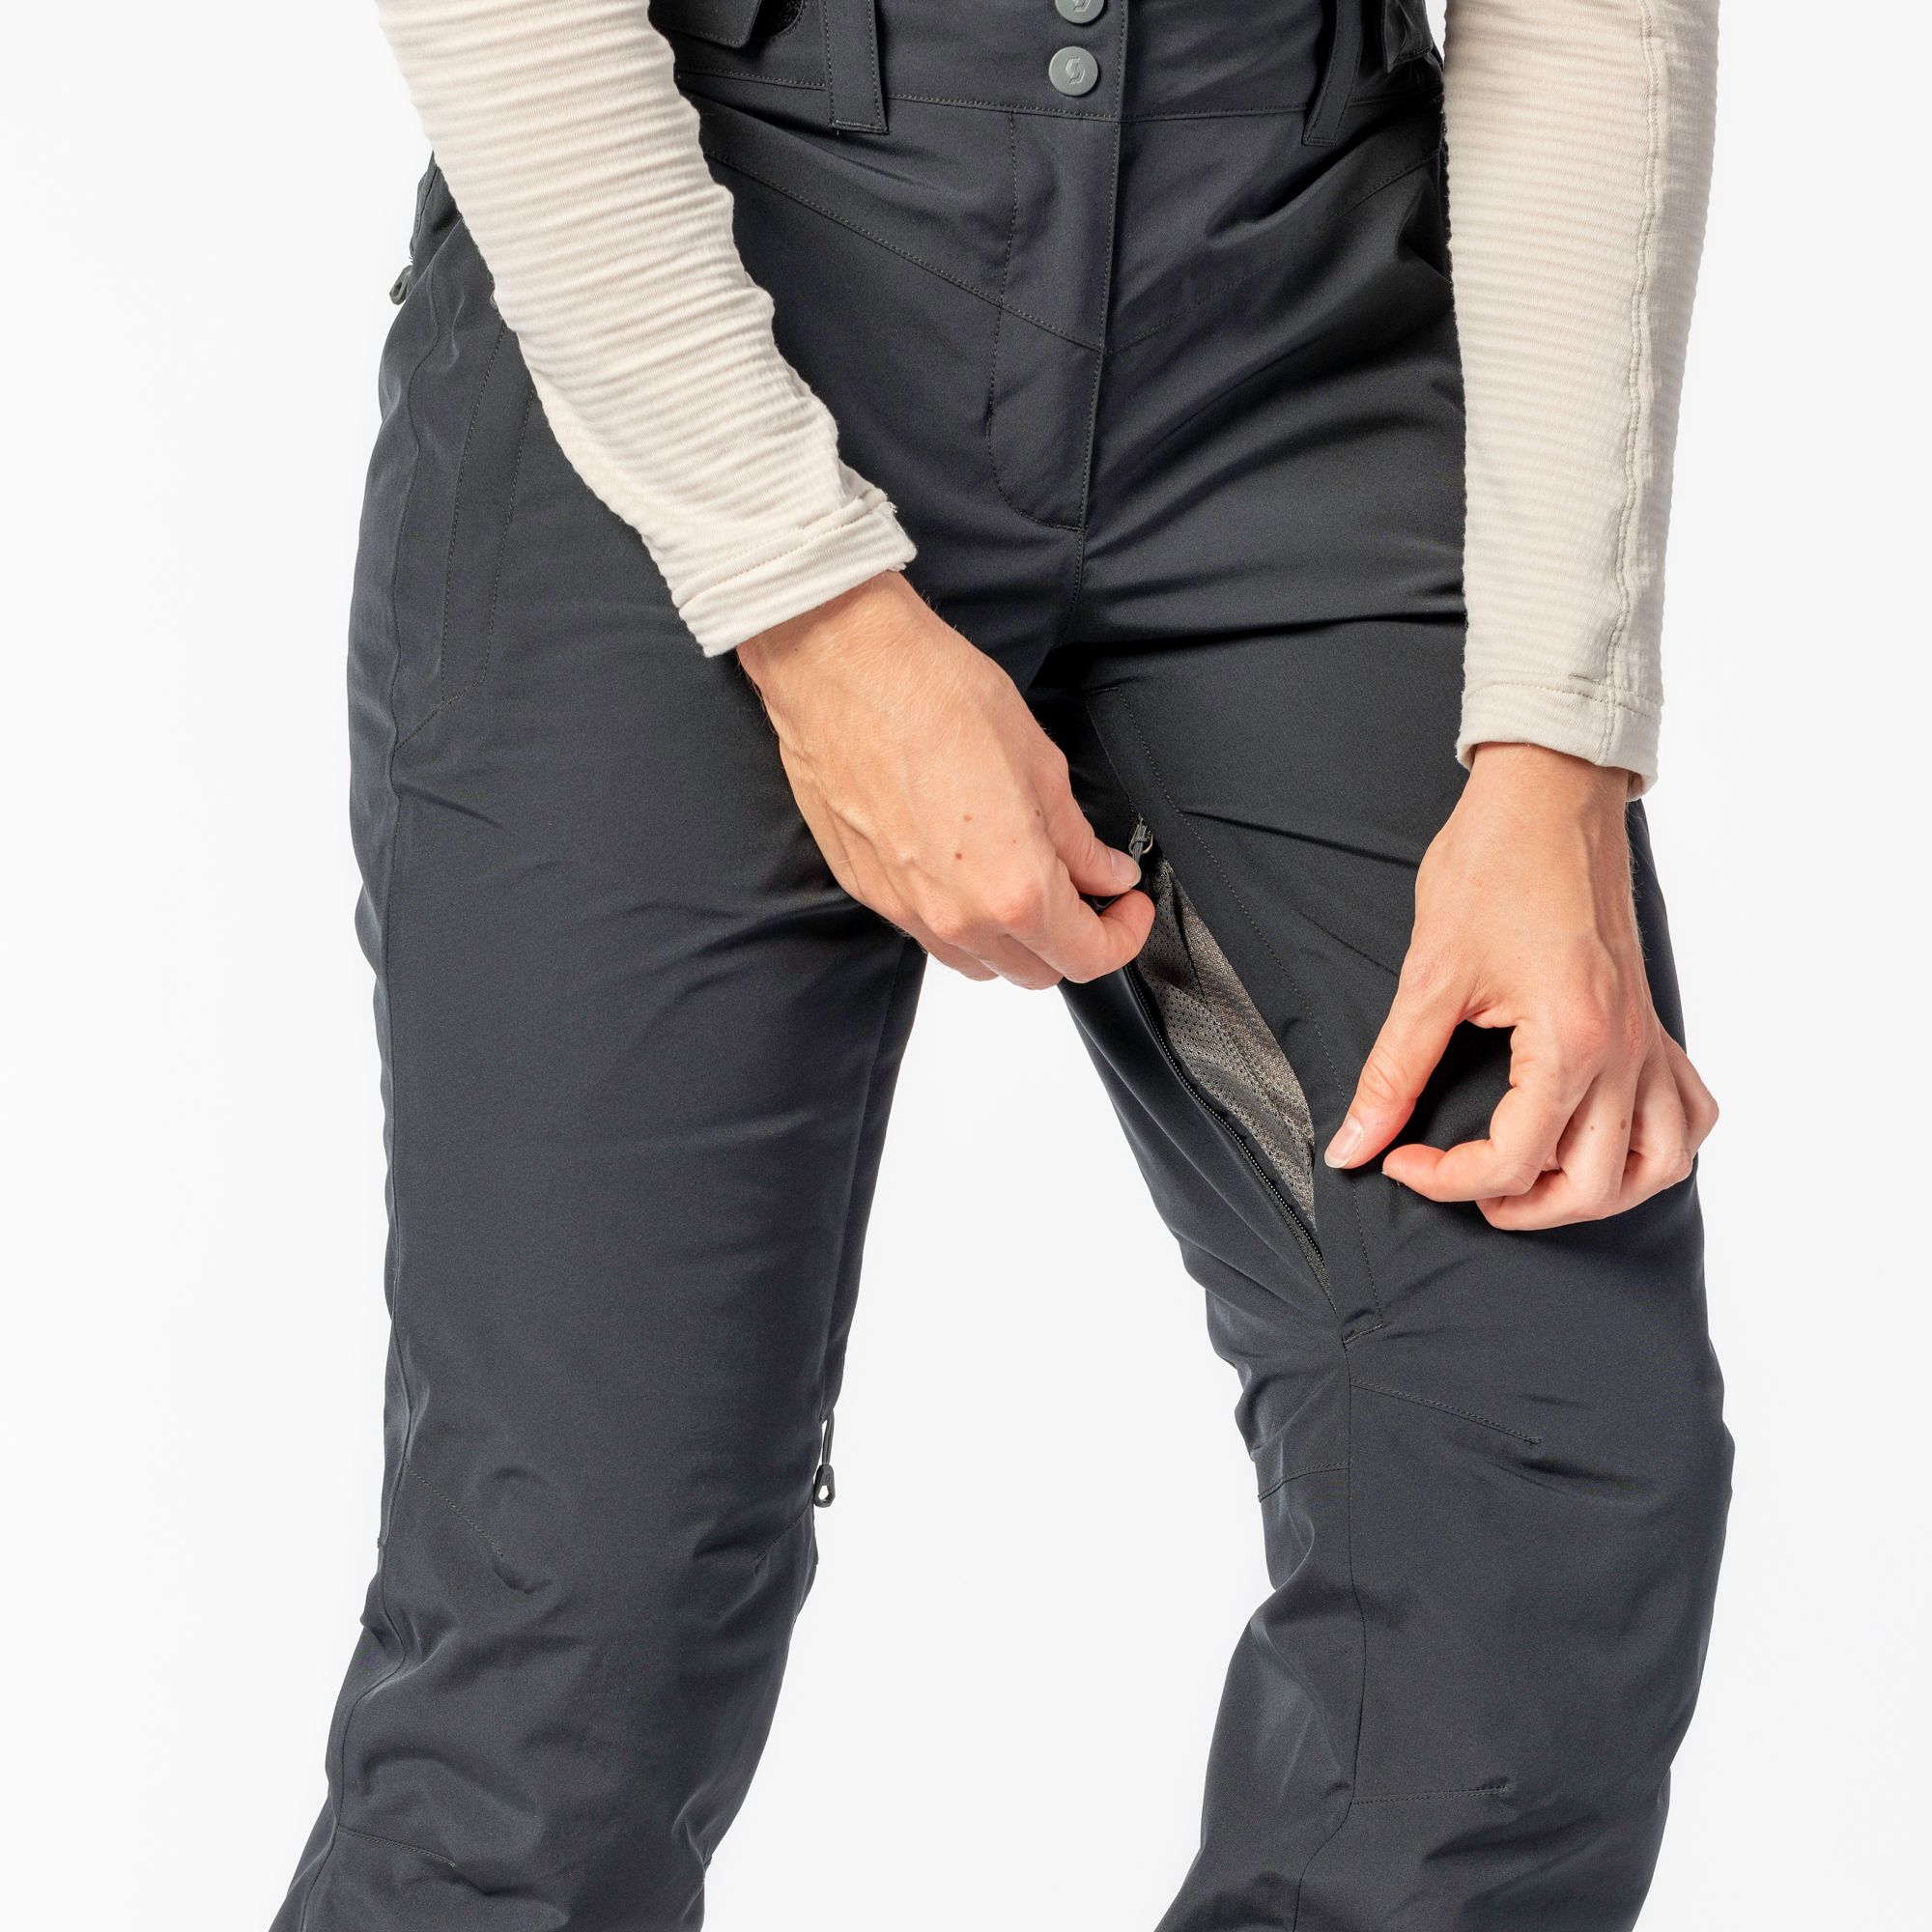 Scott Ultimate Dryo 10 Pants - Pantalon ski femme